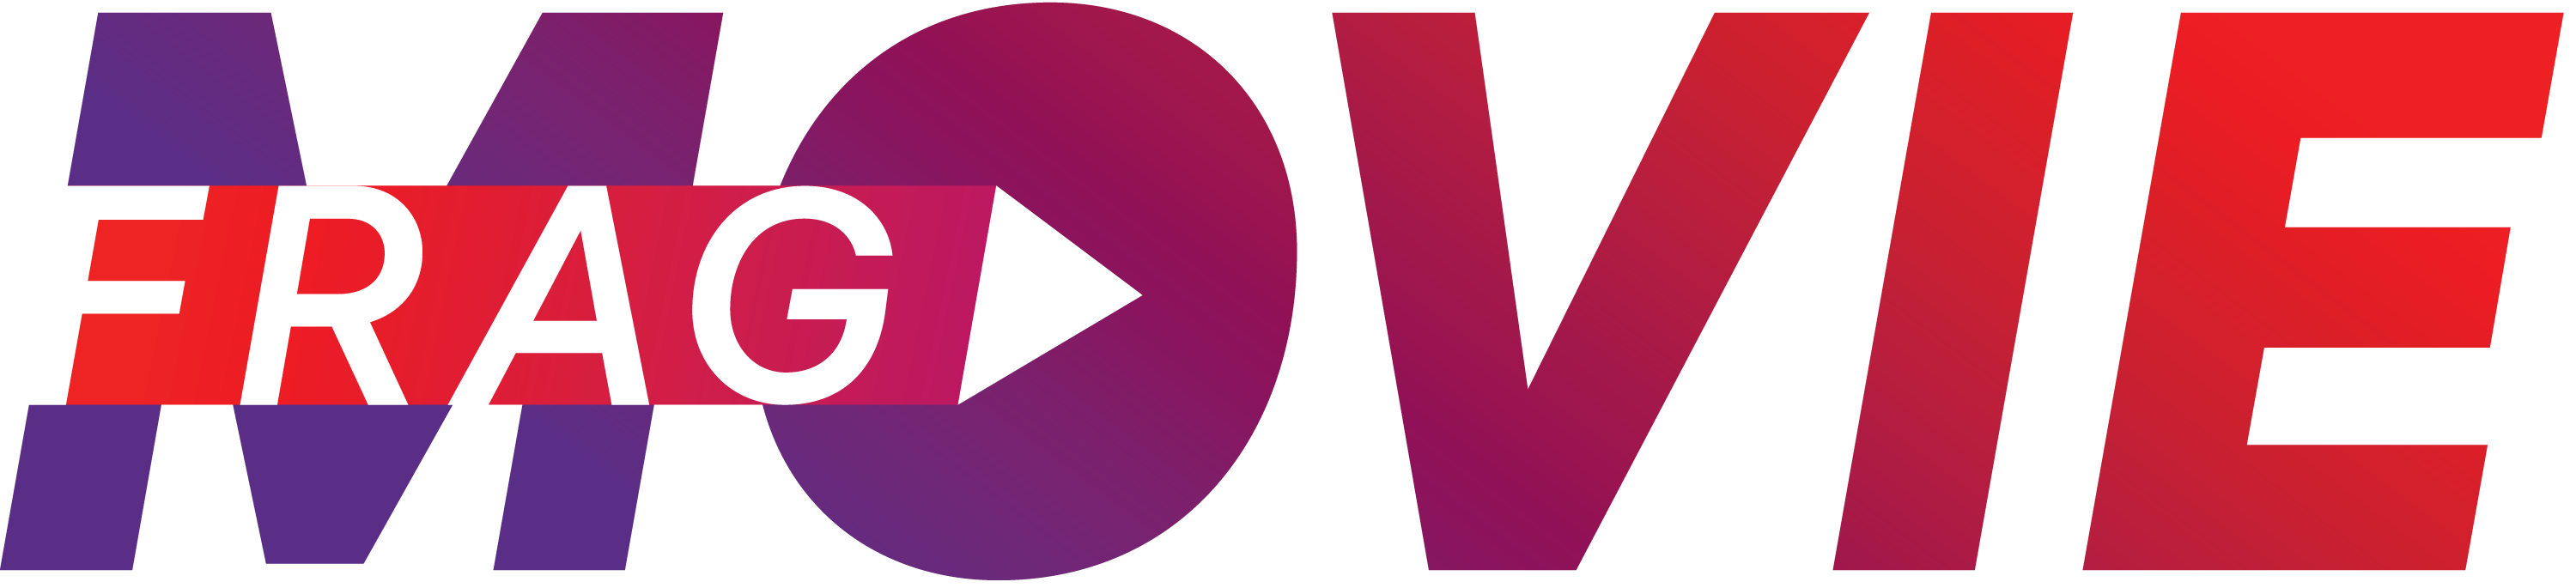 fragmovie logo